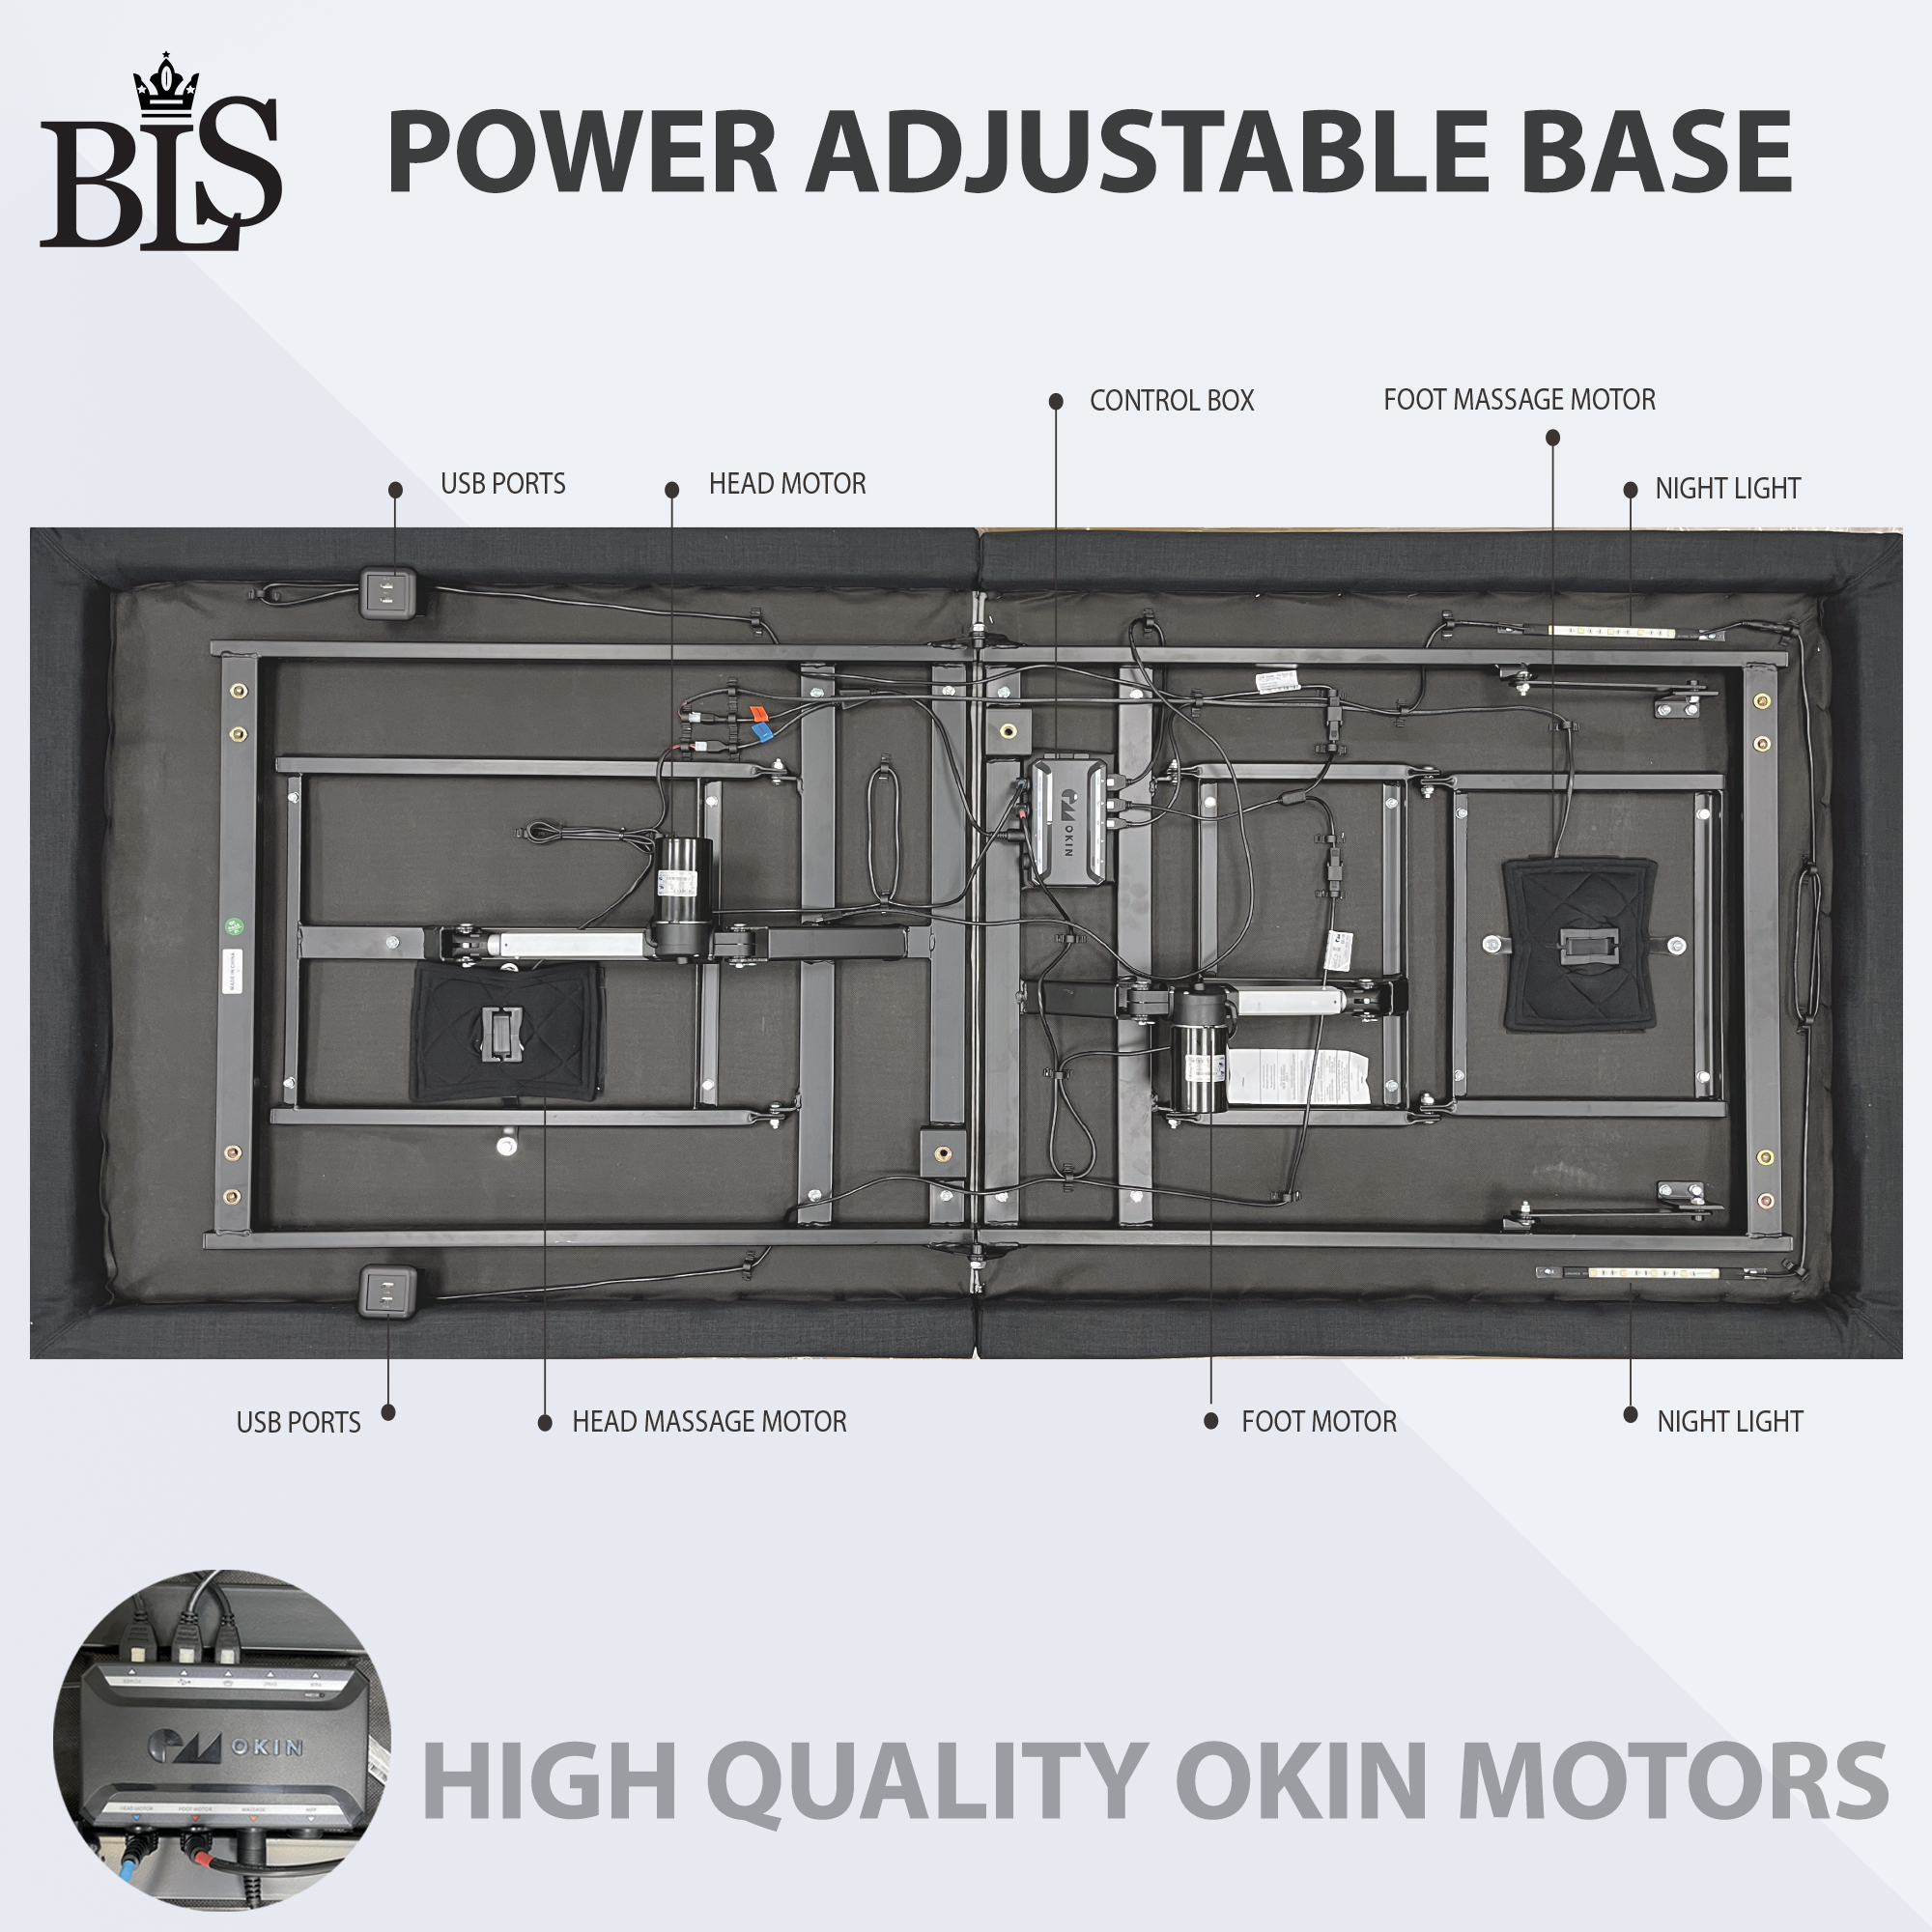 BLS Power Adjustable Base